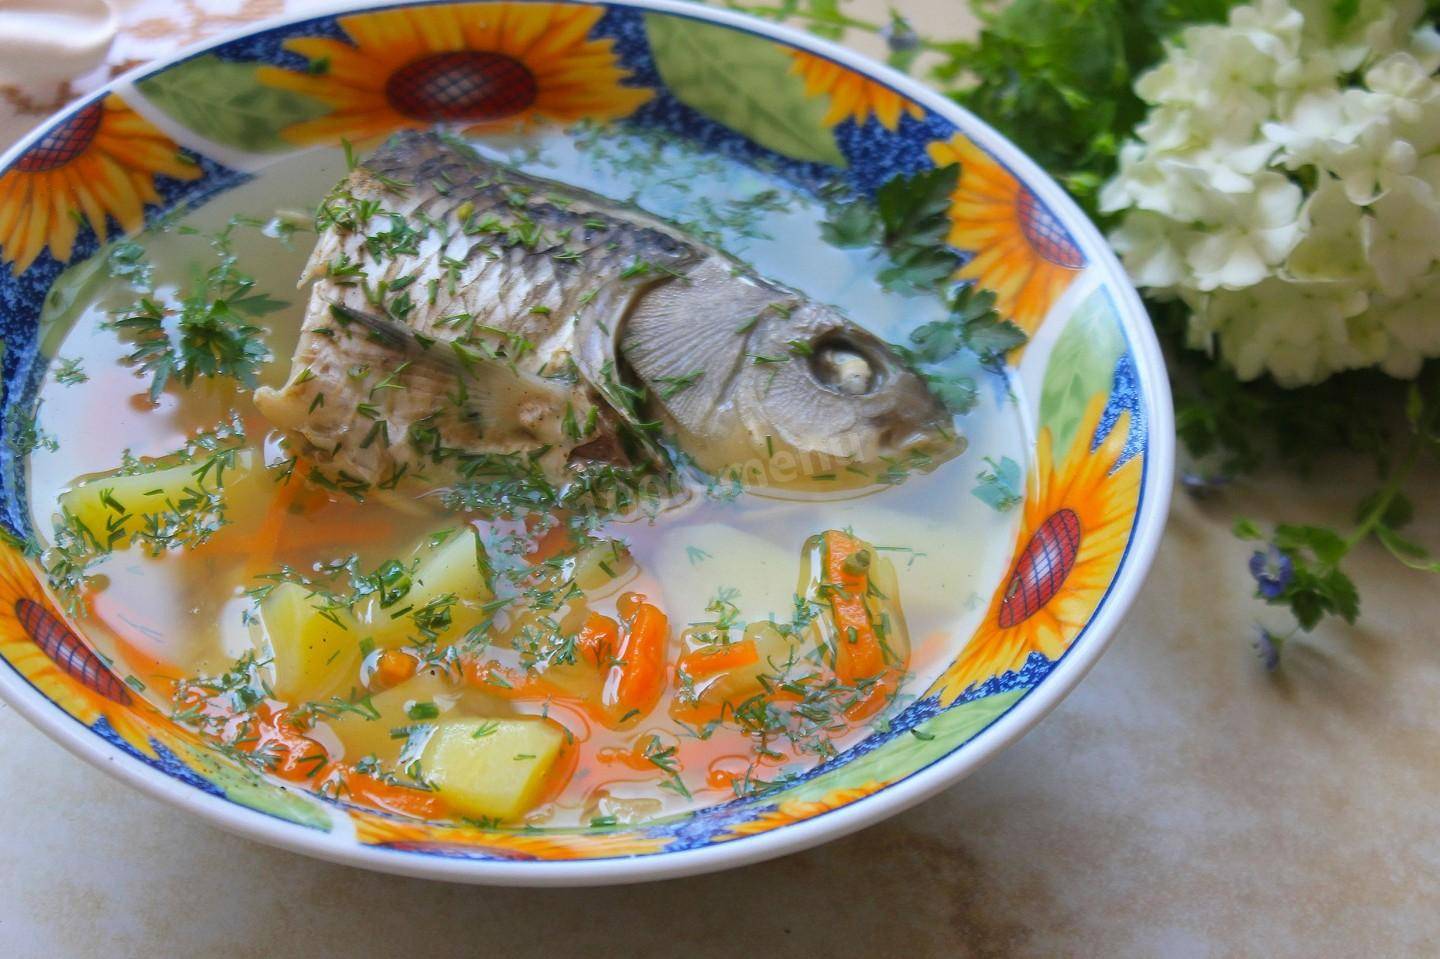 Уха из карася: 2 пошаговых рецепта для приготовления в домашних условиях супа из речной рыбы и ее голов и хвостов по классическому варианту приготовления